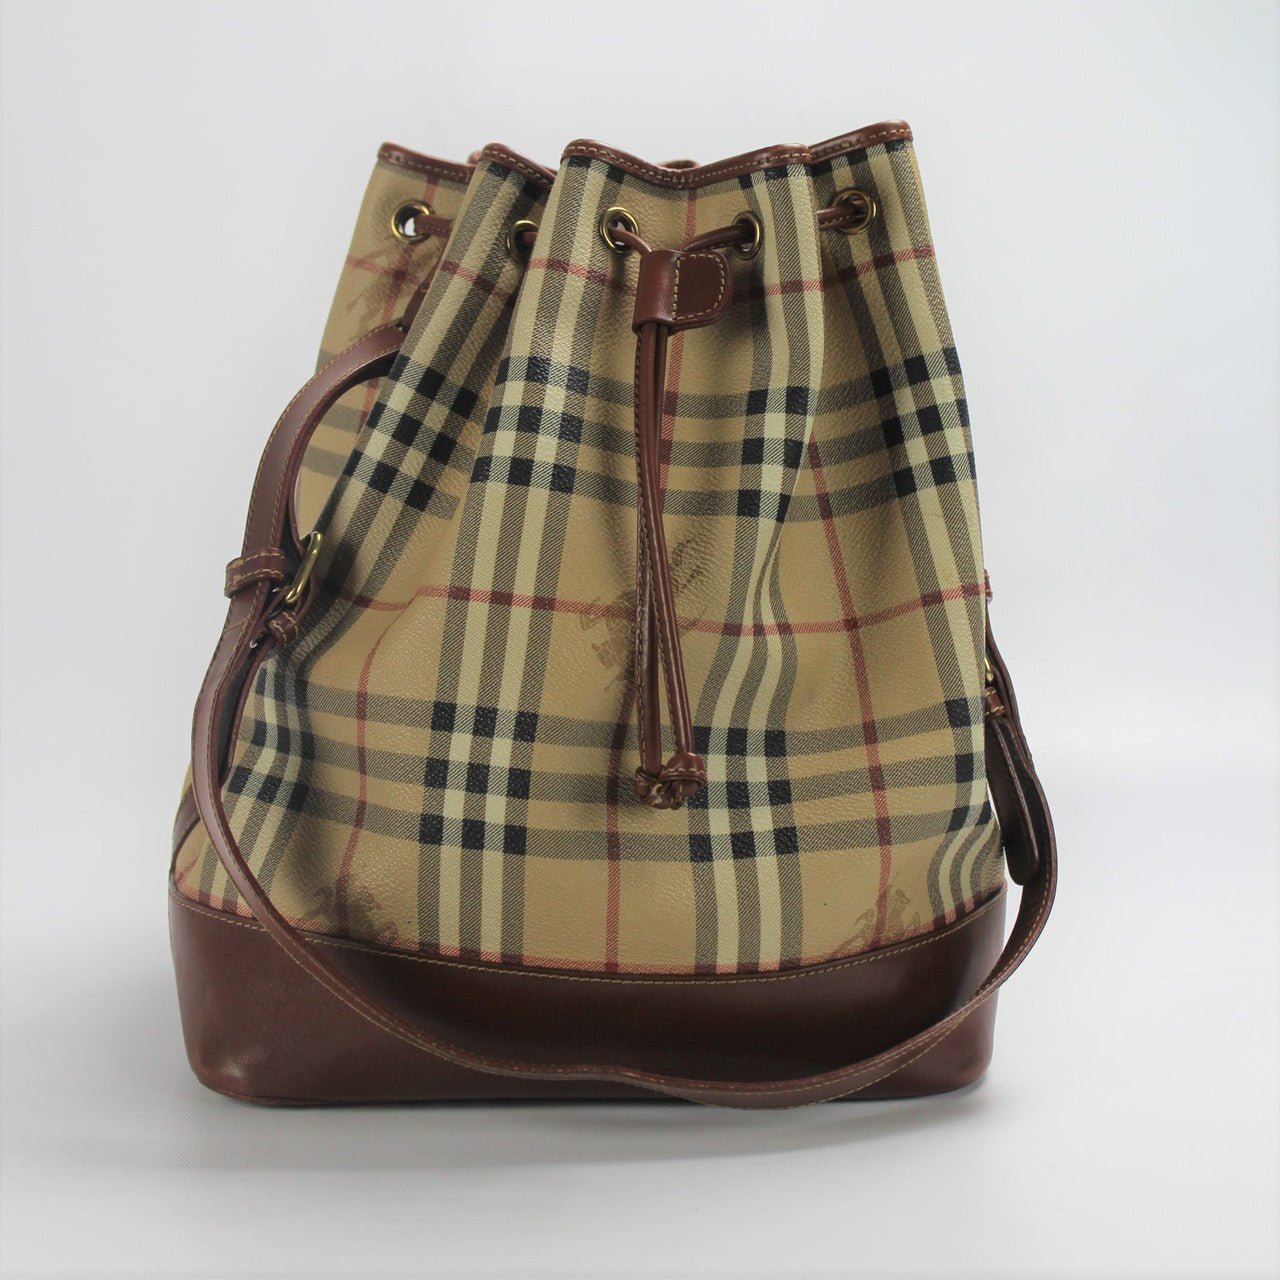 Burberry Pochette Handbag - Authentic Pre-Owned Designer Handbags